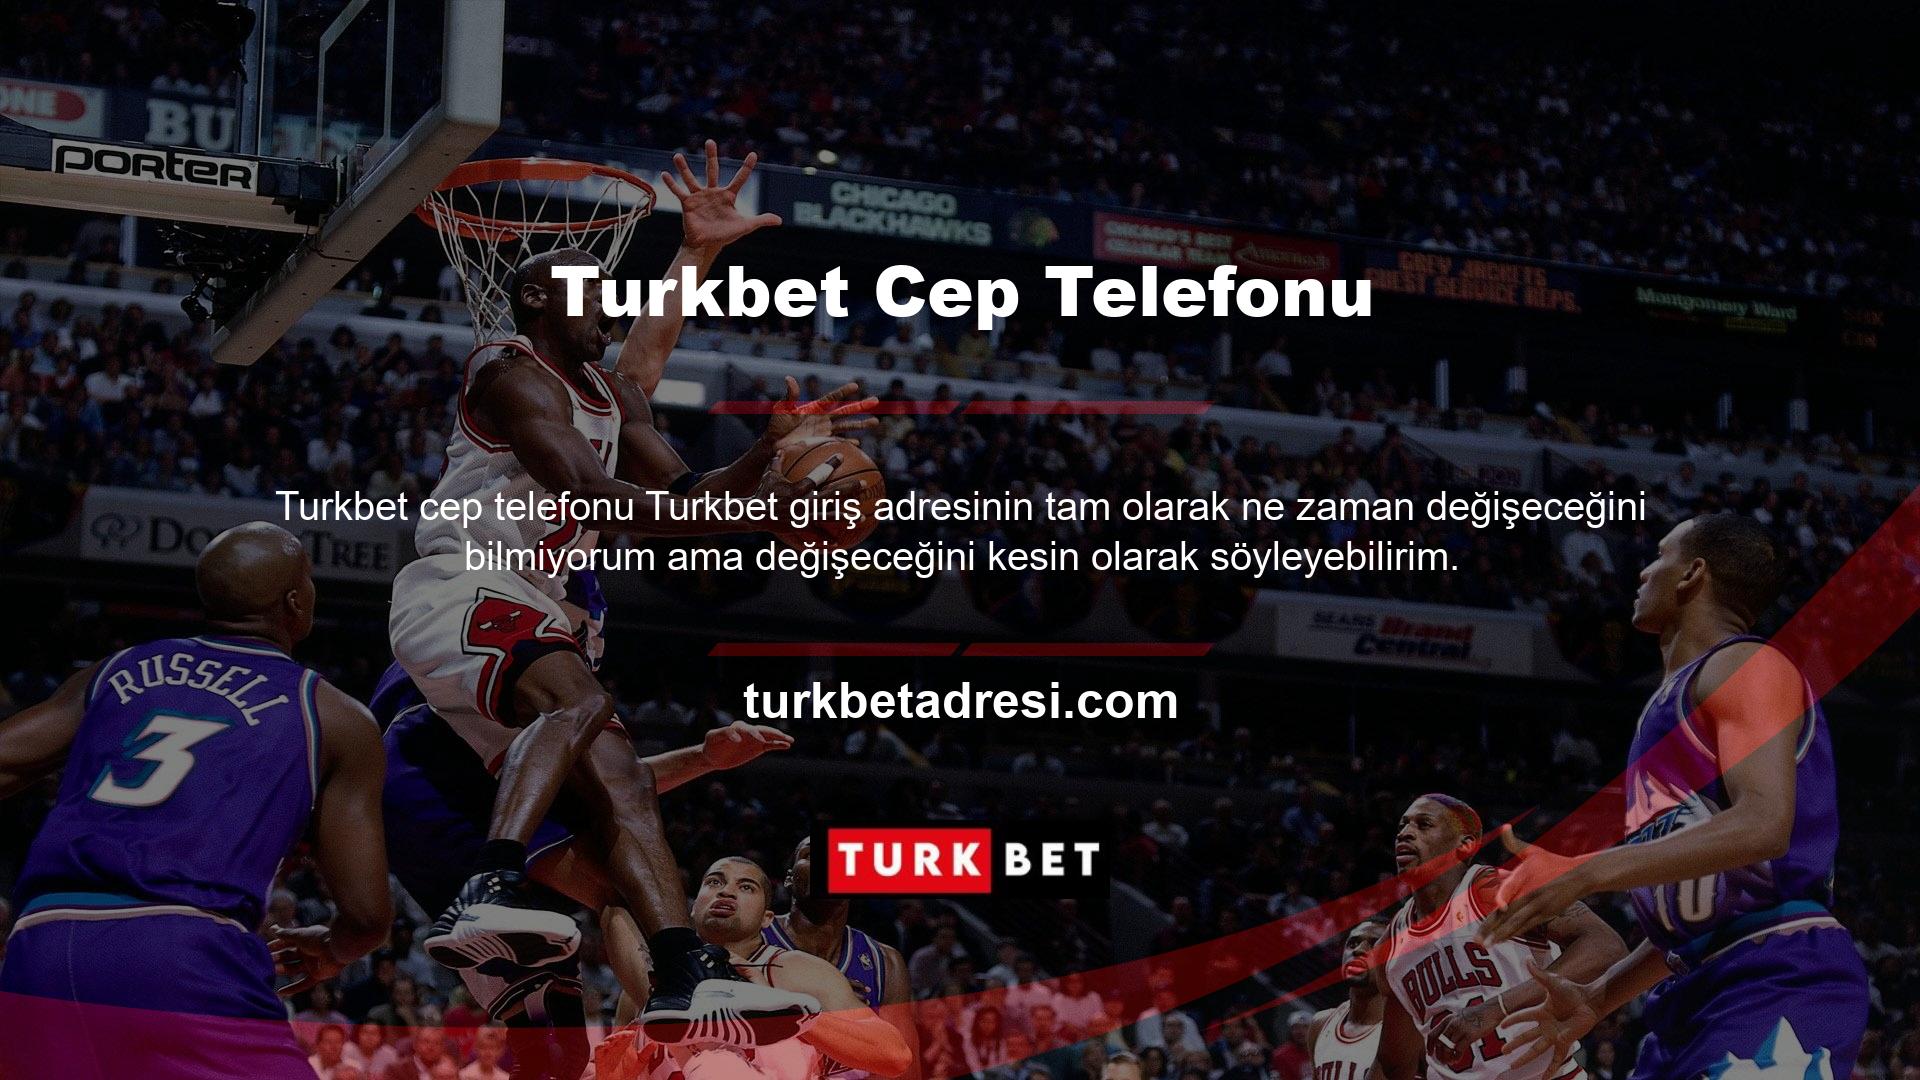 Türk Telekomünikasyon Kurumu (TİB) casino sitelerine erişimi engelleyebilir